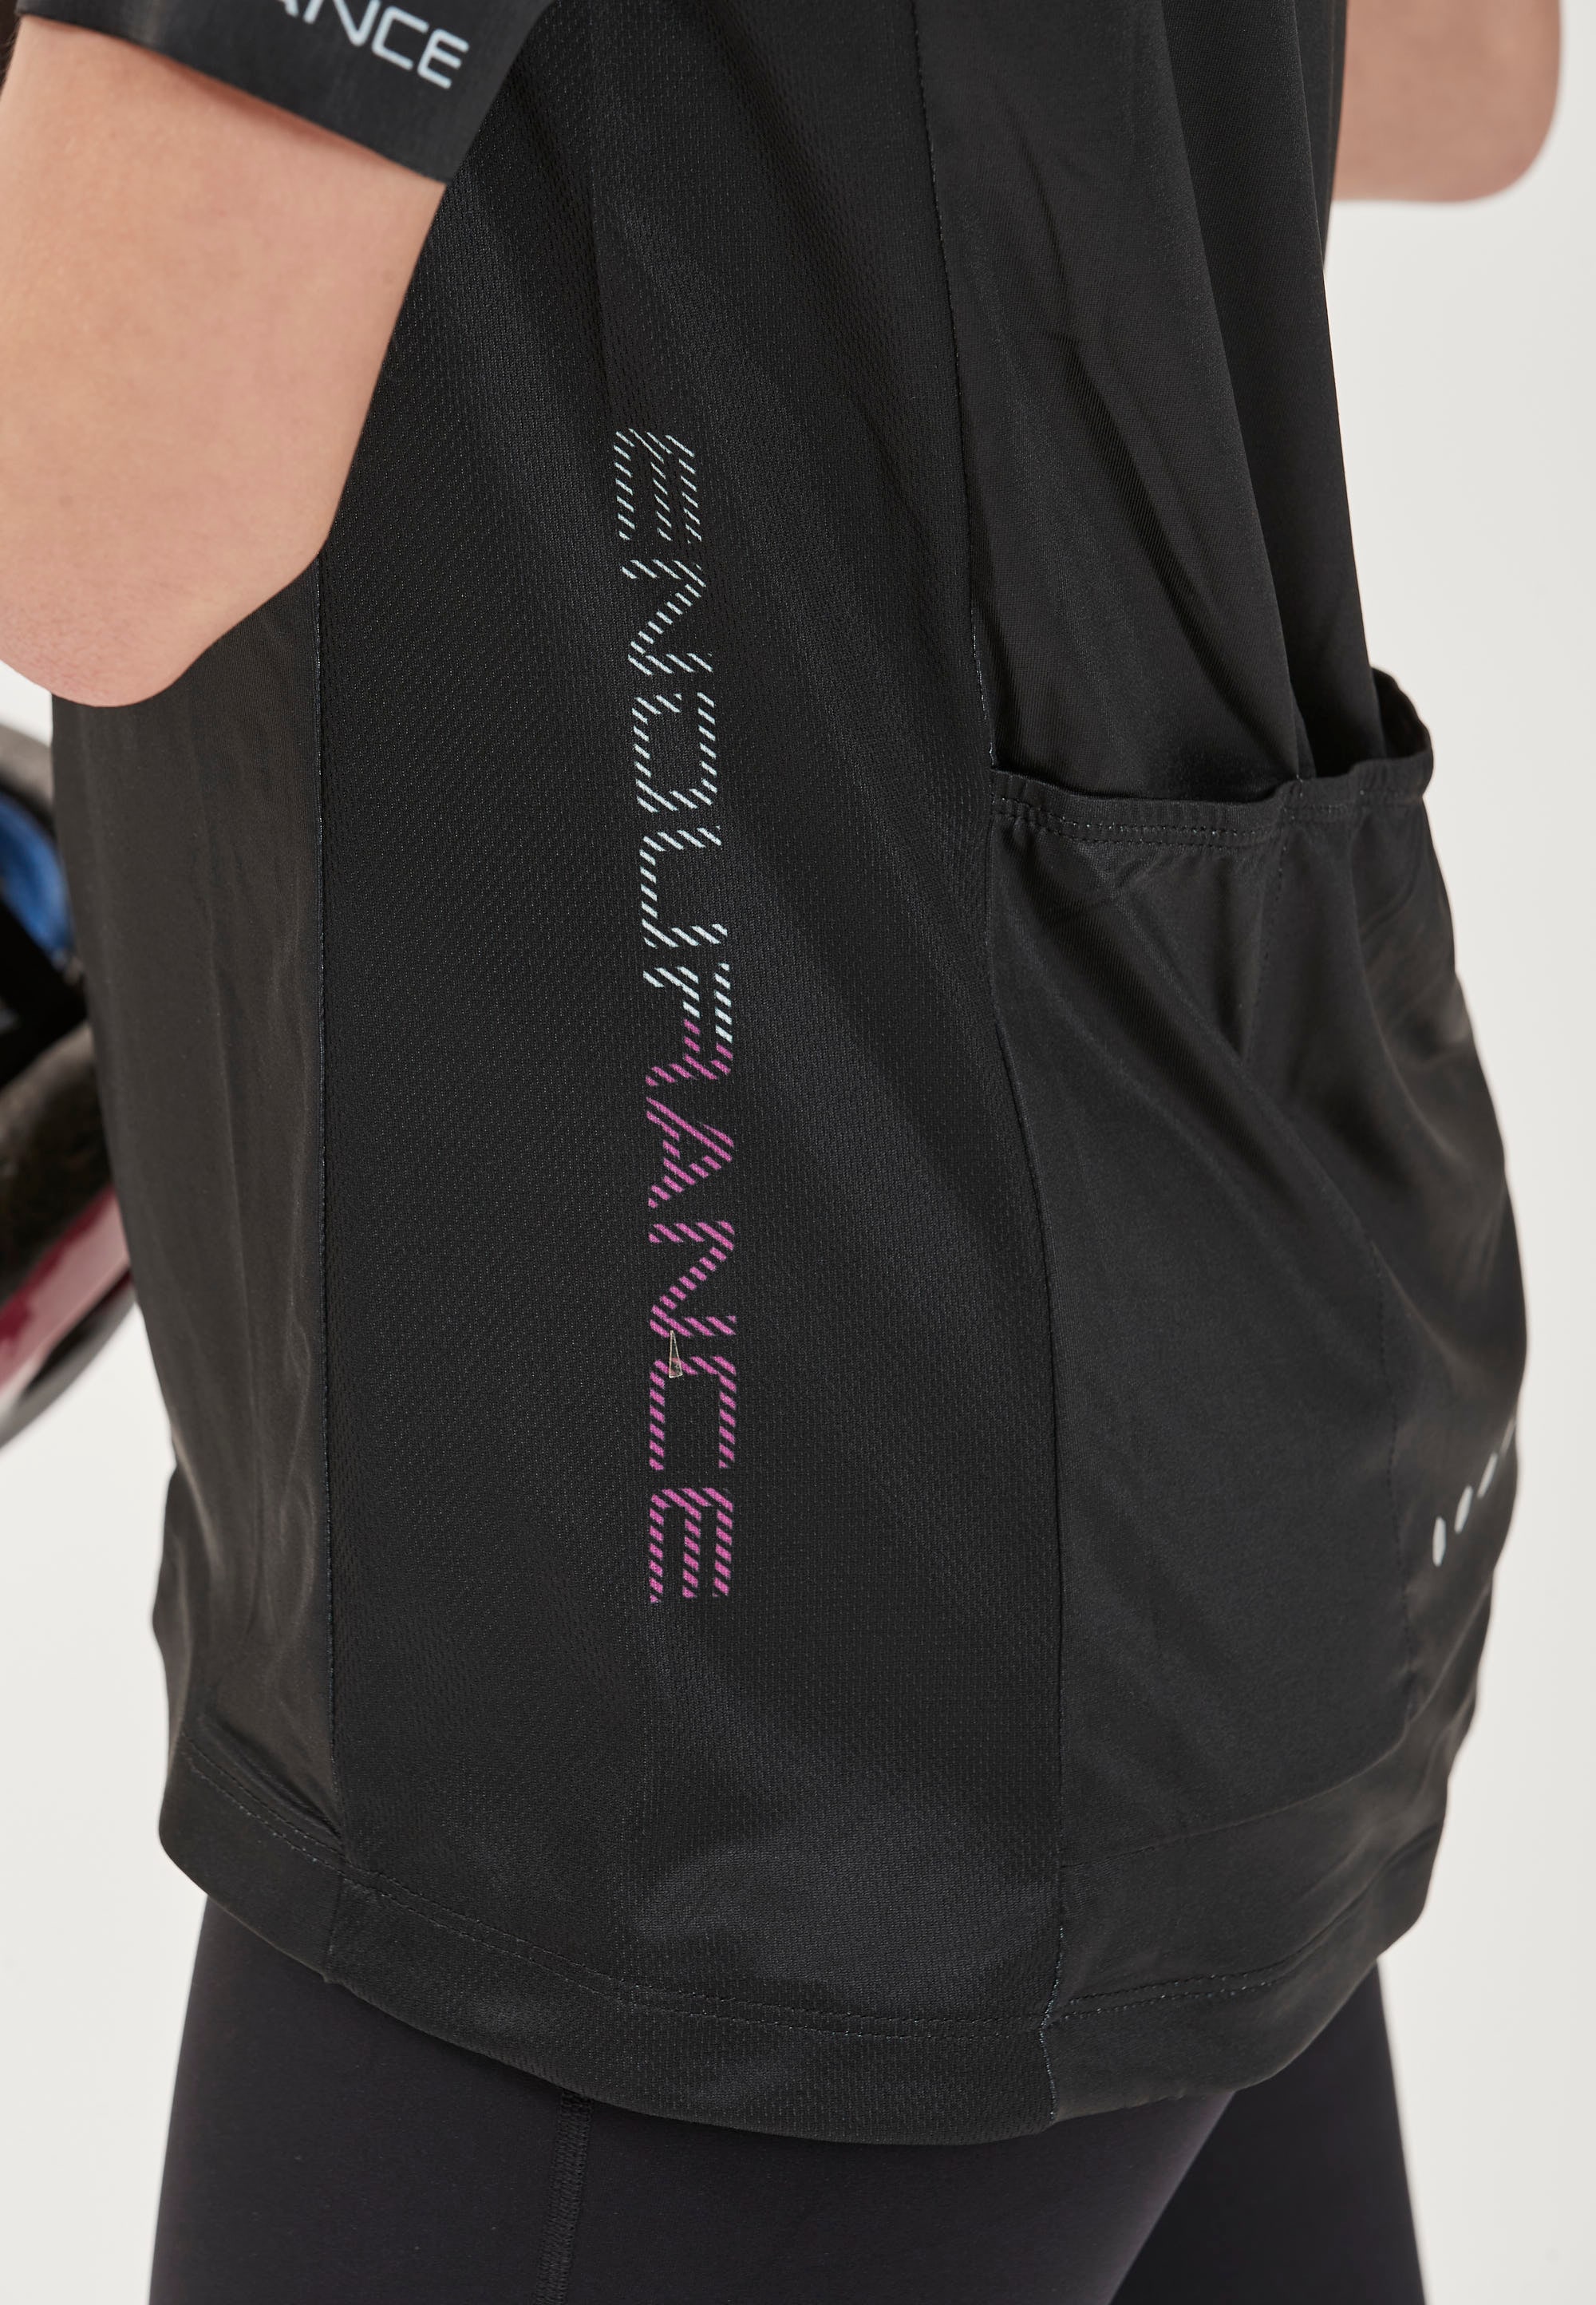 S/S BAUR | Bike praktischer mit »BEATRICE Radtrikot ENDURANCE Shirt«, W Rückentasche